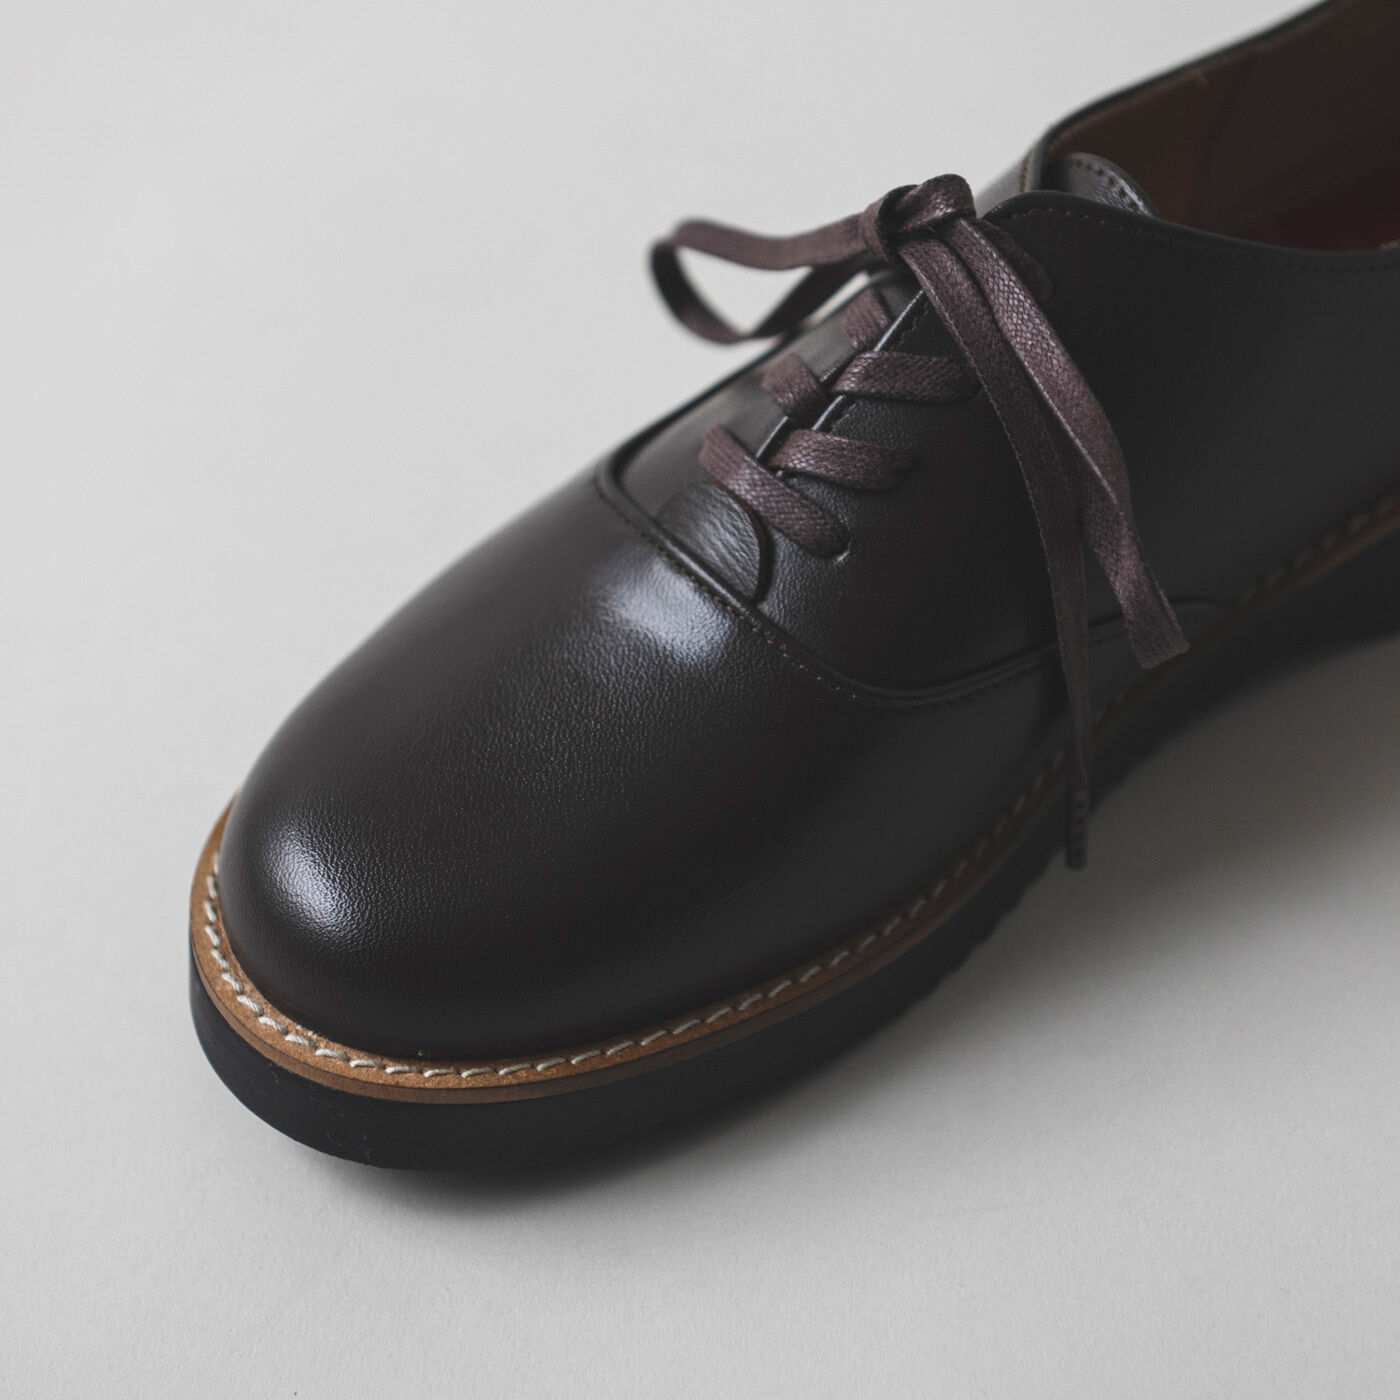 ＆Stories|長田の靴職人が作った 職人本革のポストマンシューズ〈ダークブラウン〉|ほどよくぽってりとしたボリュームも特徴。